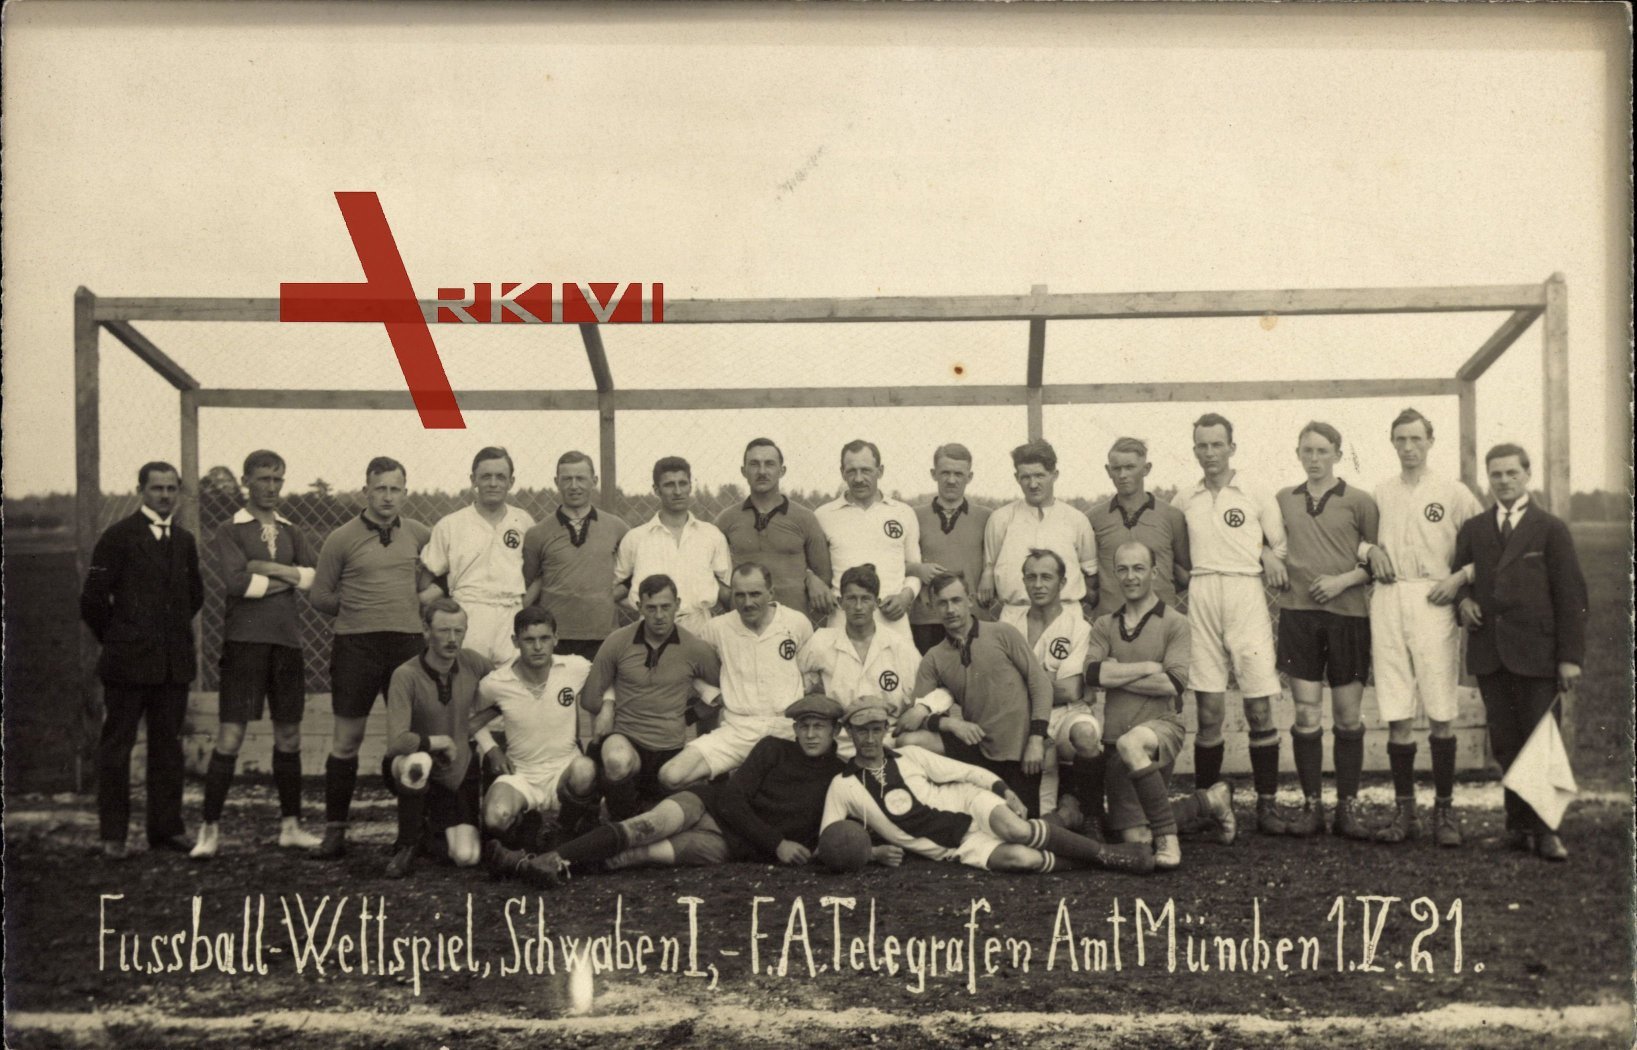 Fußball Wettspiel, Schwaben I., F.A.Telegrafen Amt München, 01 V. 1921